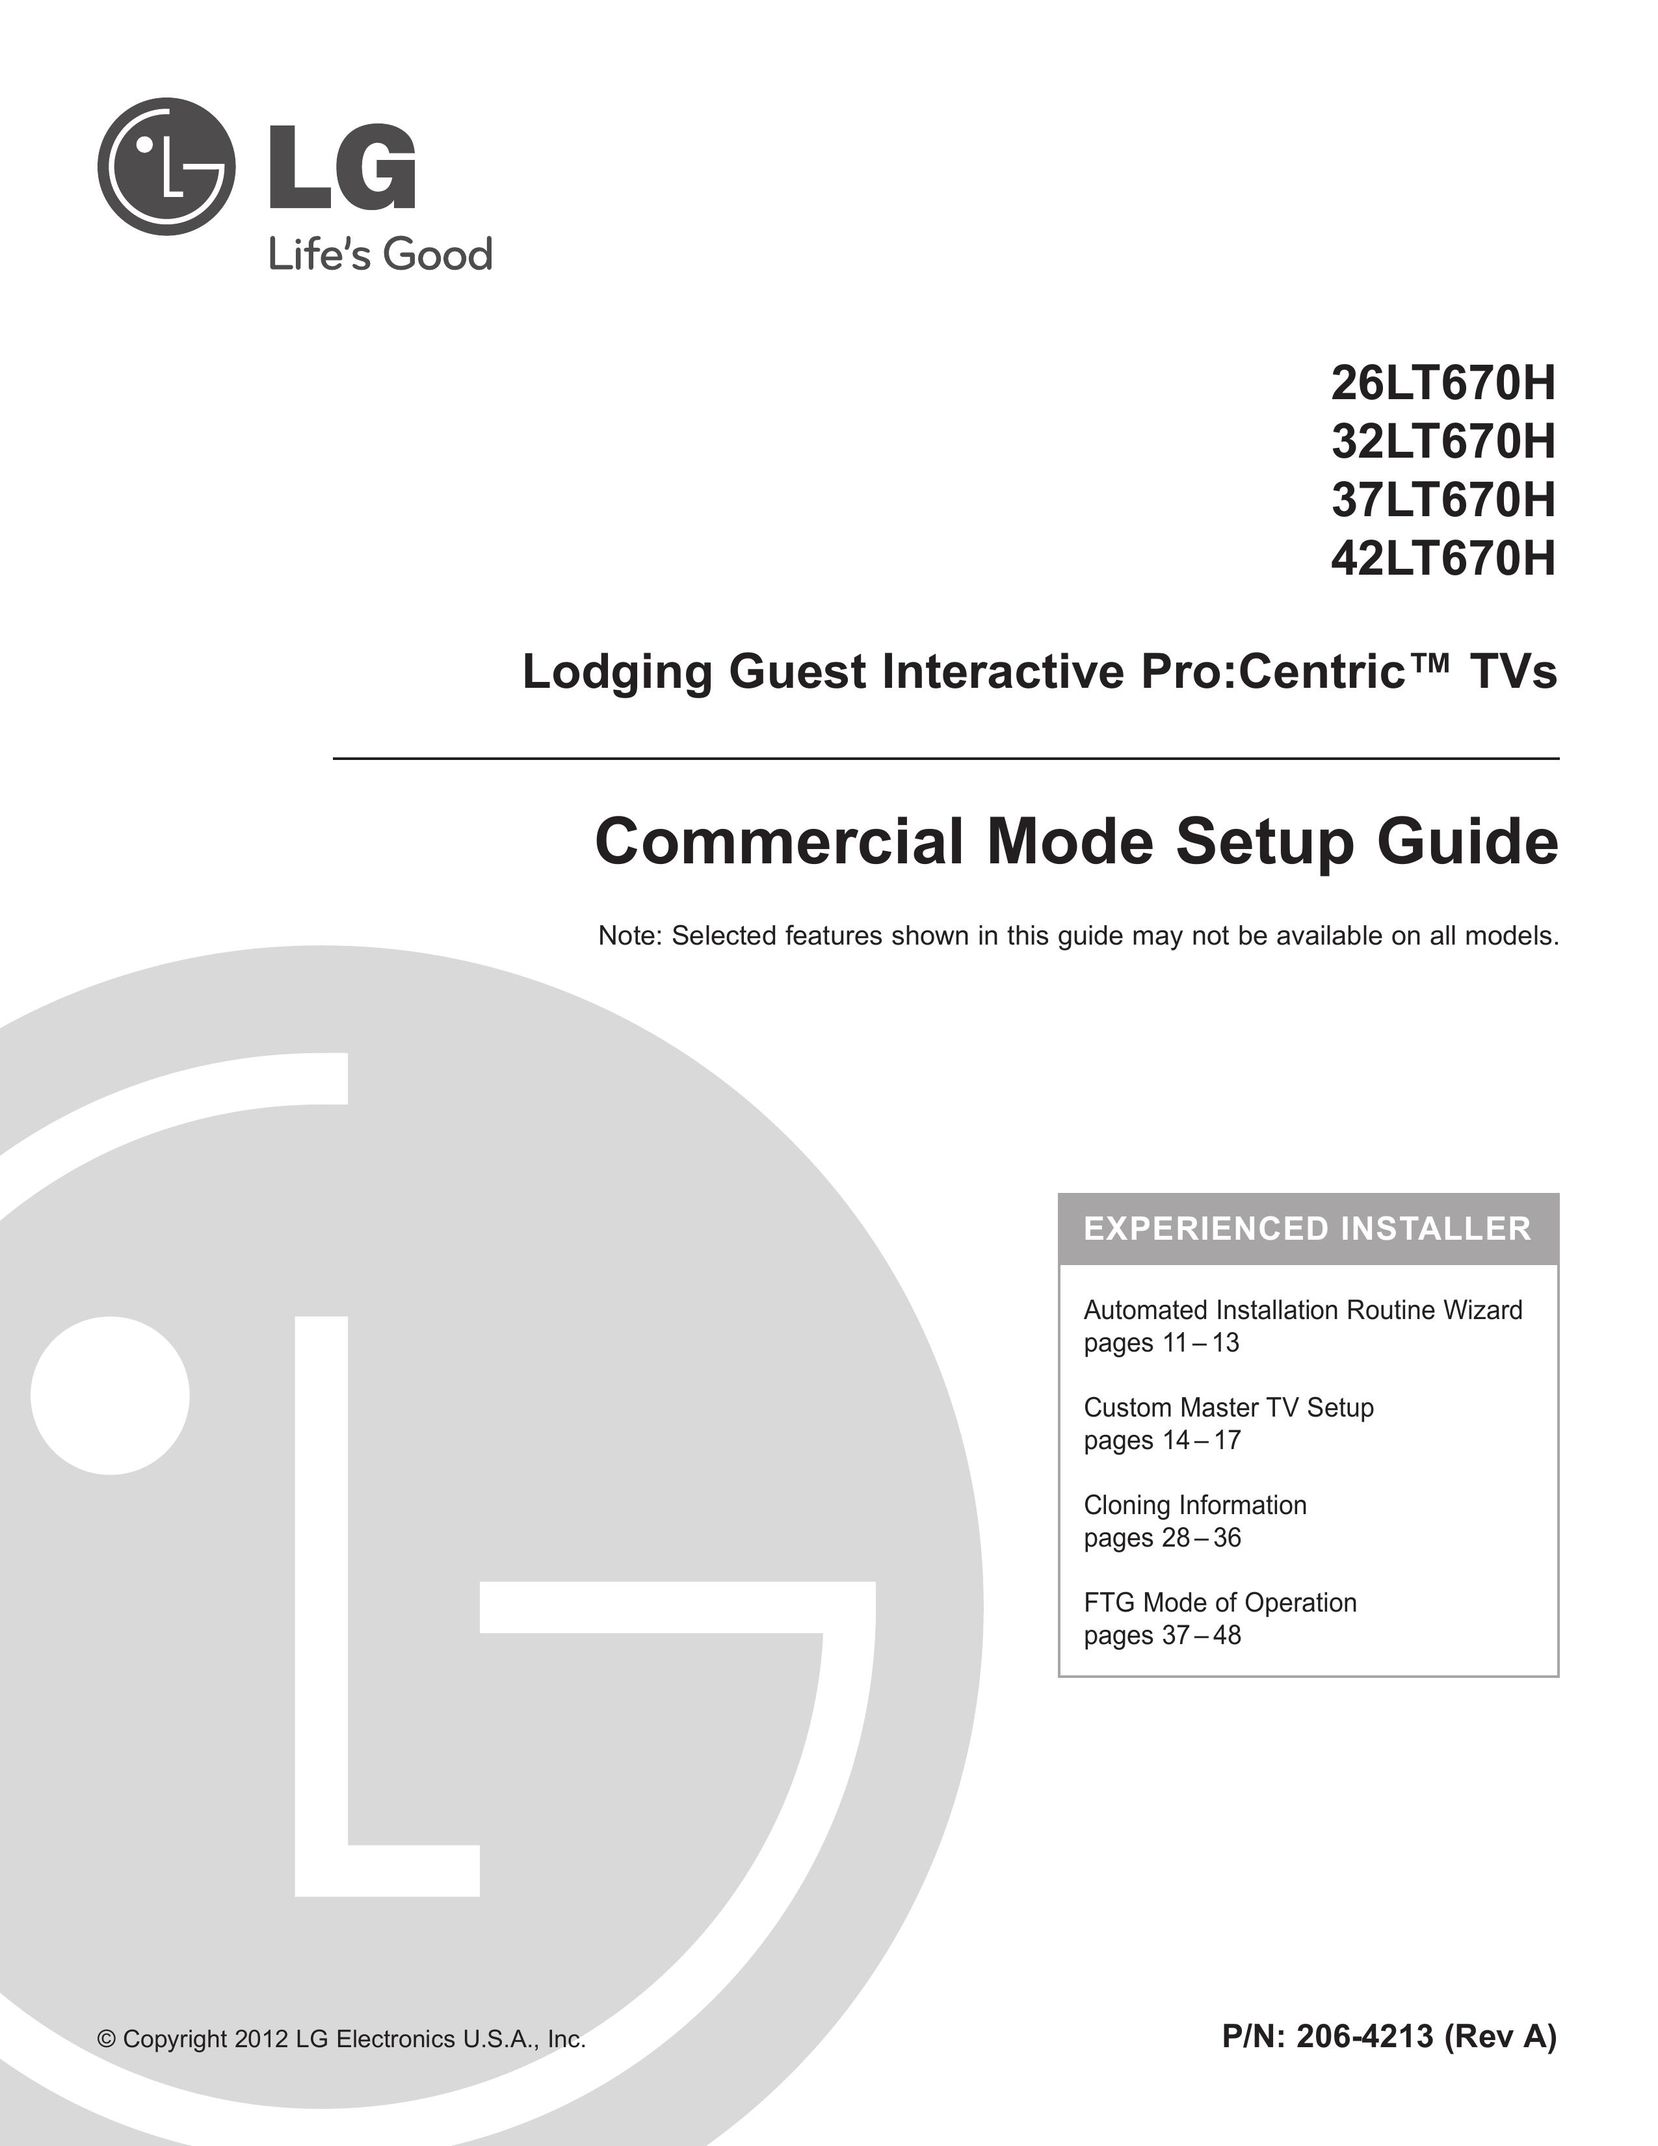 LG Electronics 37LT670H Model Vehicle User Manual